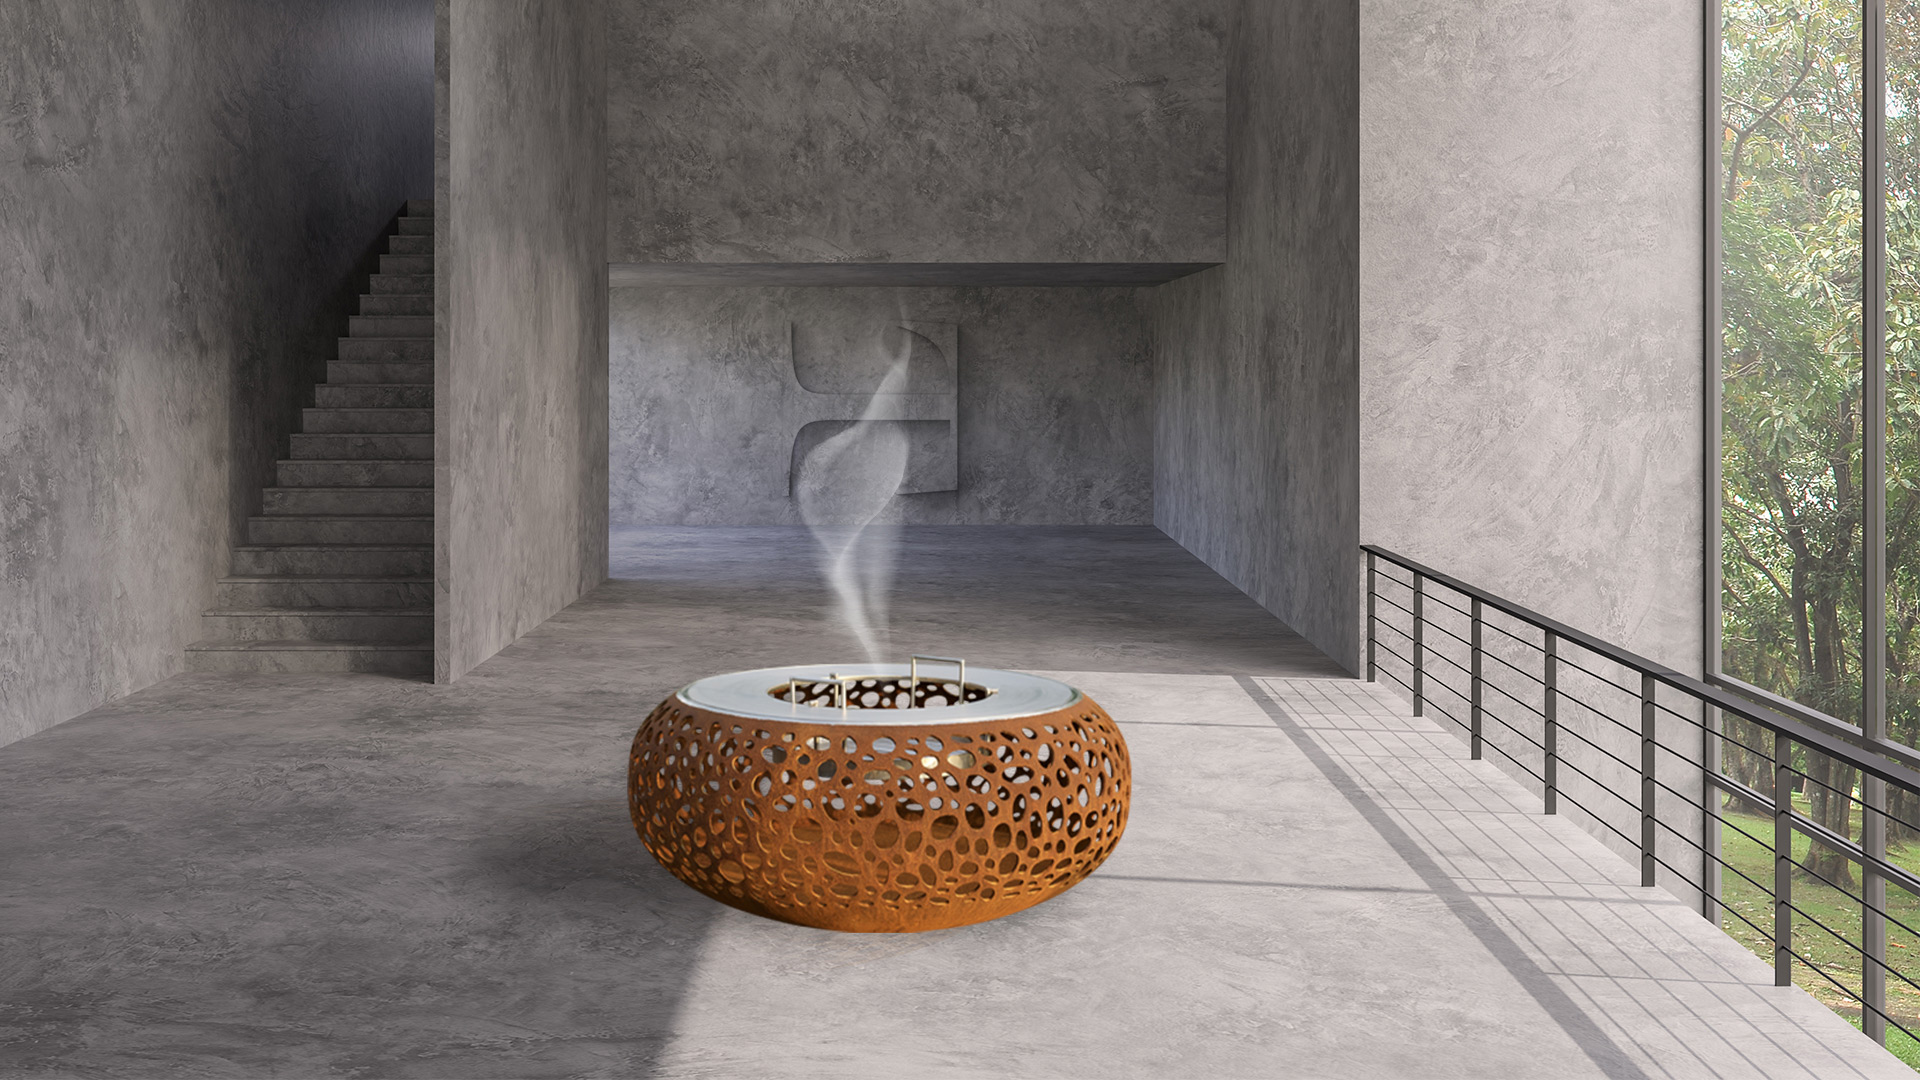 Grillschale als Feuerkorb in exklusivem Schweizer Design für Barbecue